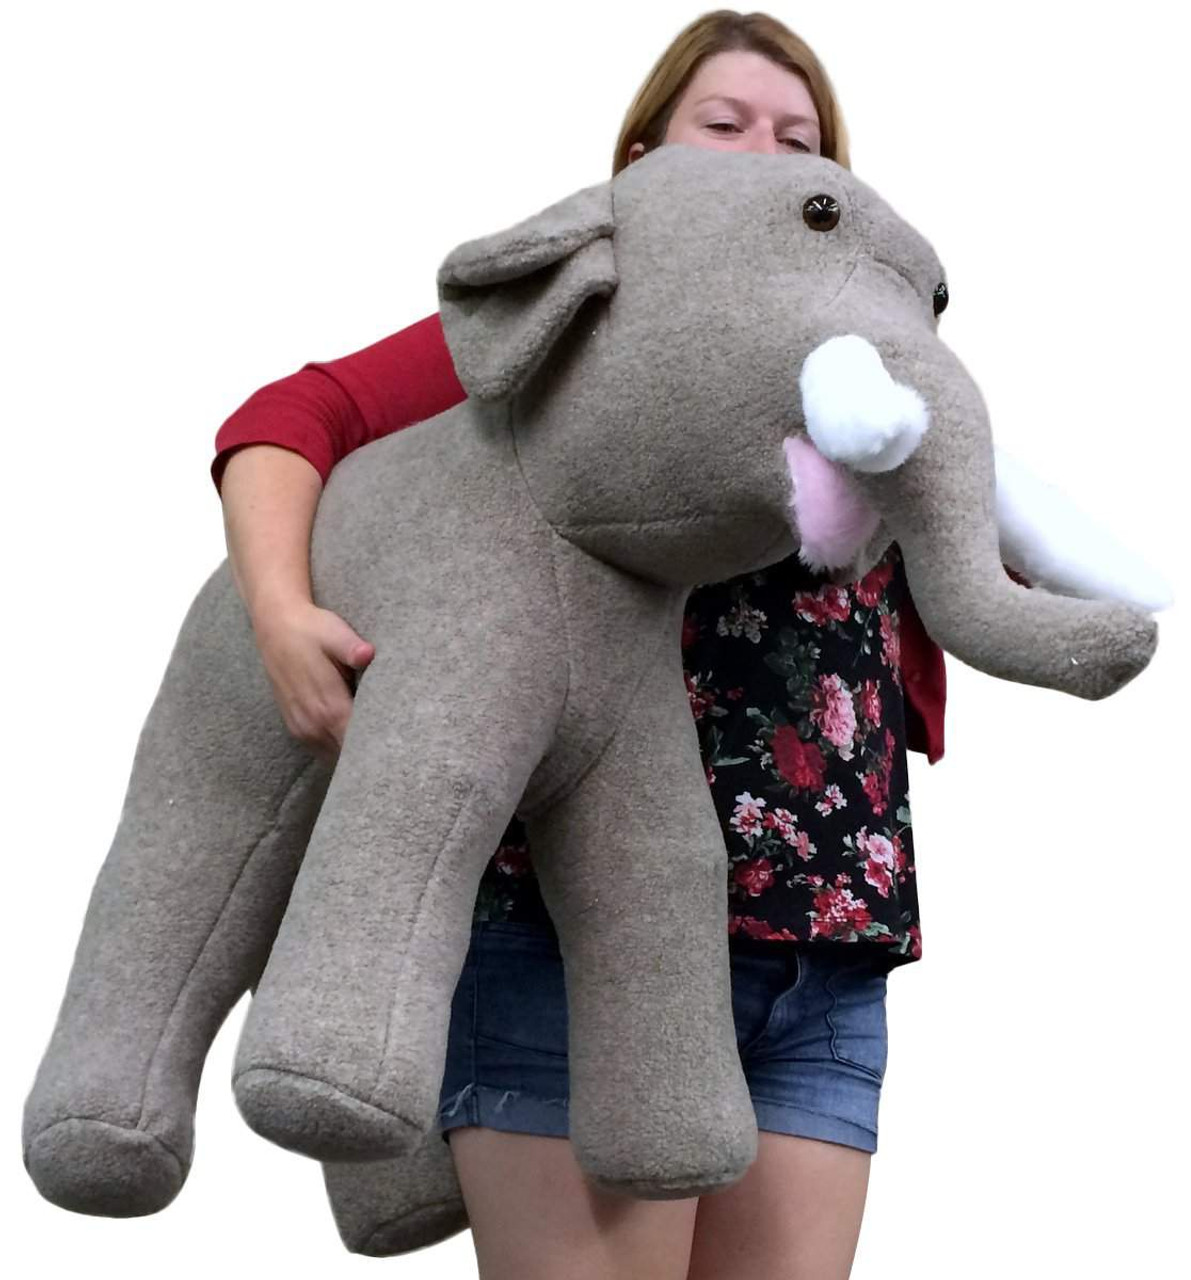 big stuffed animal elephant